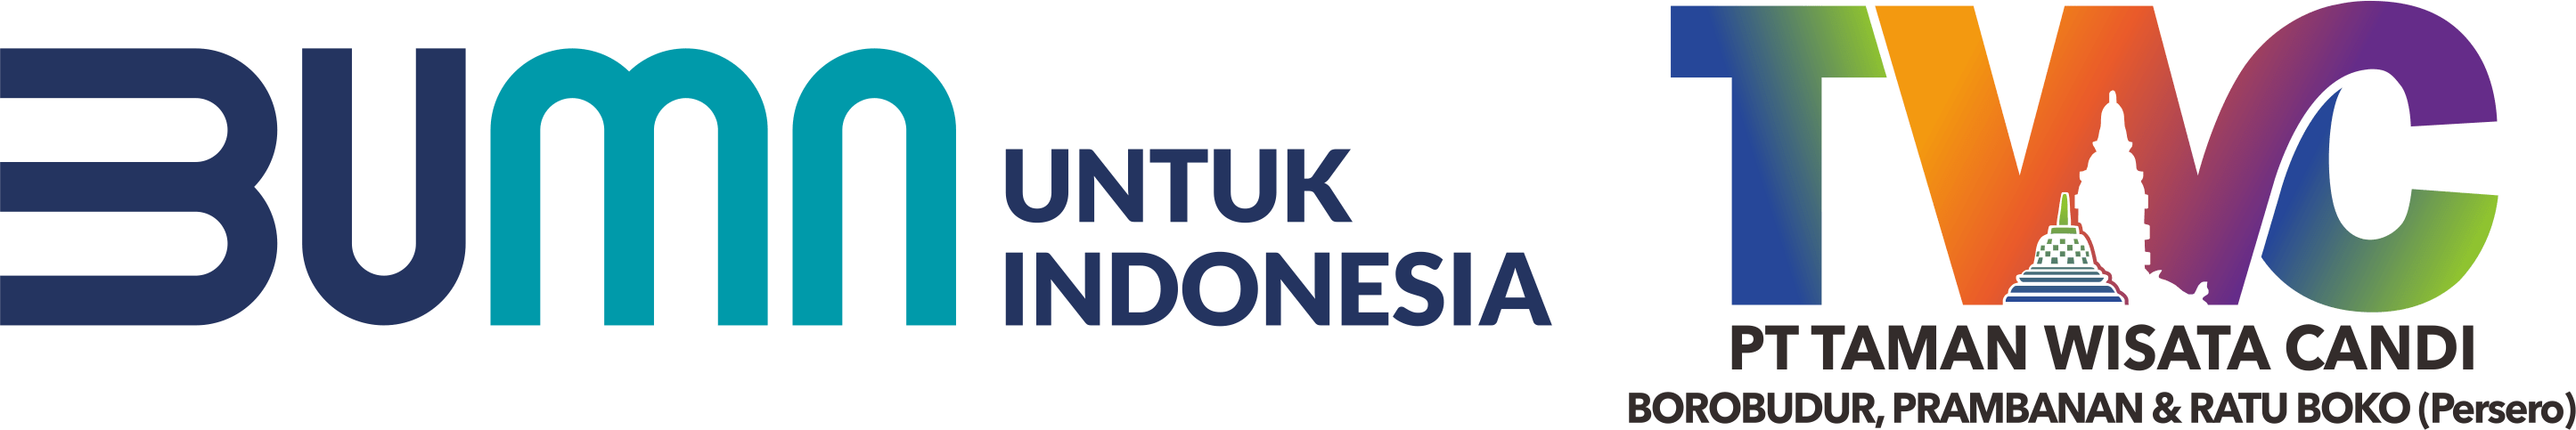 Prambanan Jazz 2019 Taman Wisata Candi